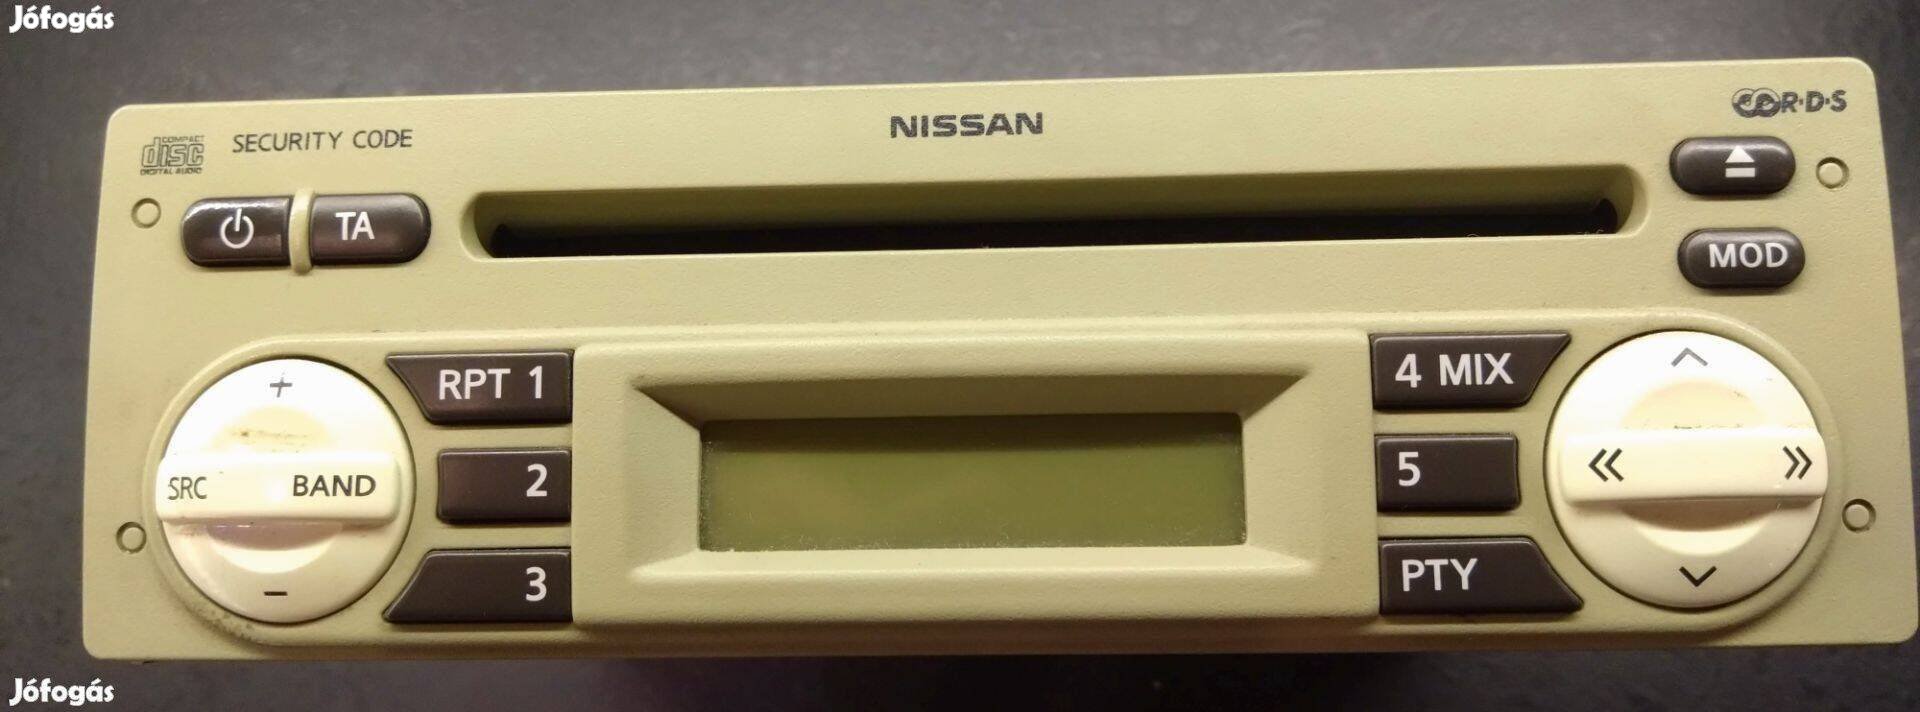 Gyári Nissan autó rádió eladó, gyári kóddal